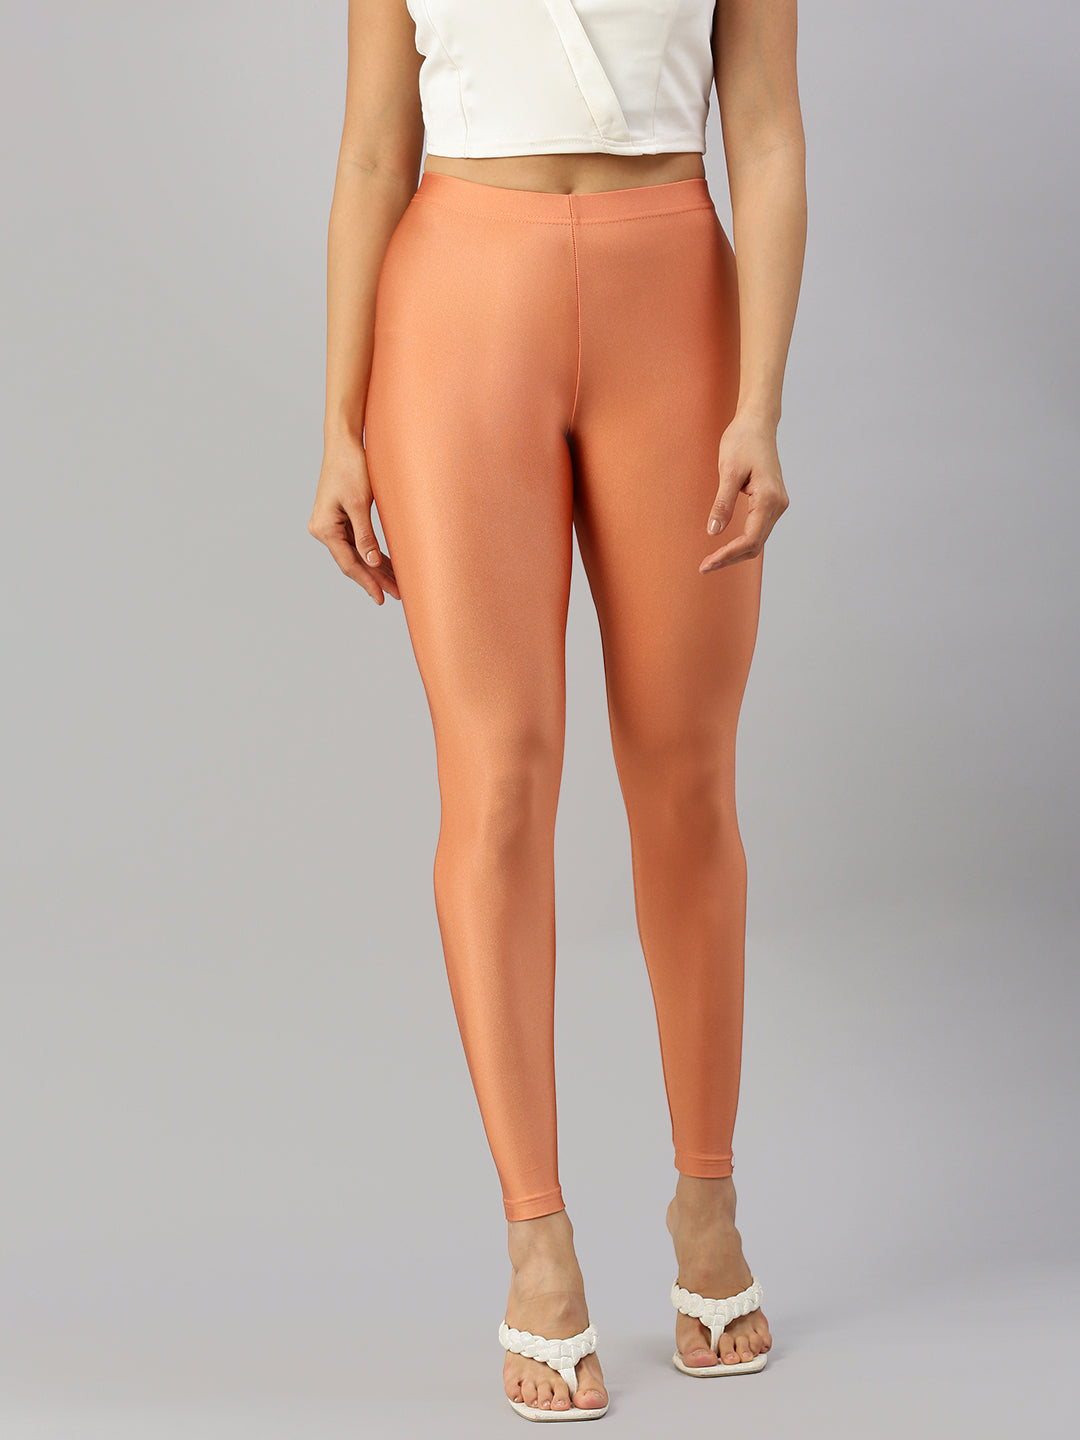 Buy Prisma Shimmer Leggings for Women's - Size (S) Colour (Gold) at